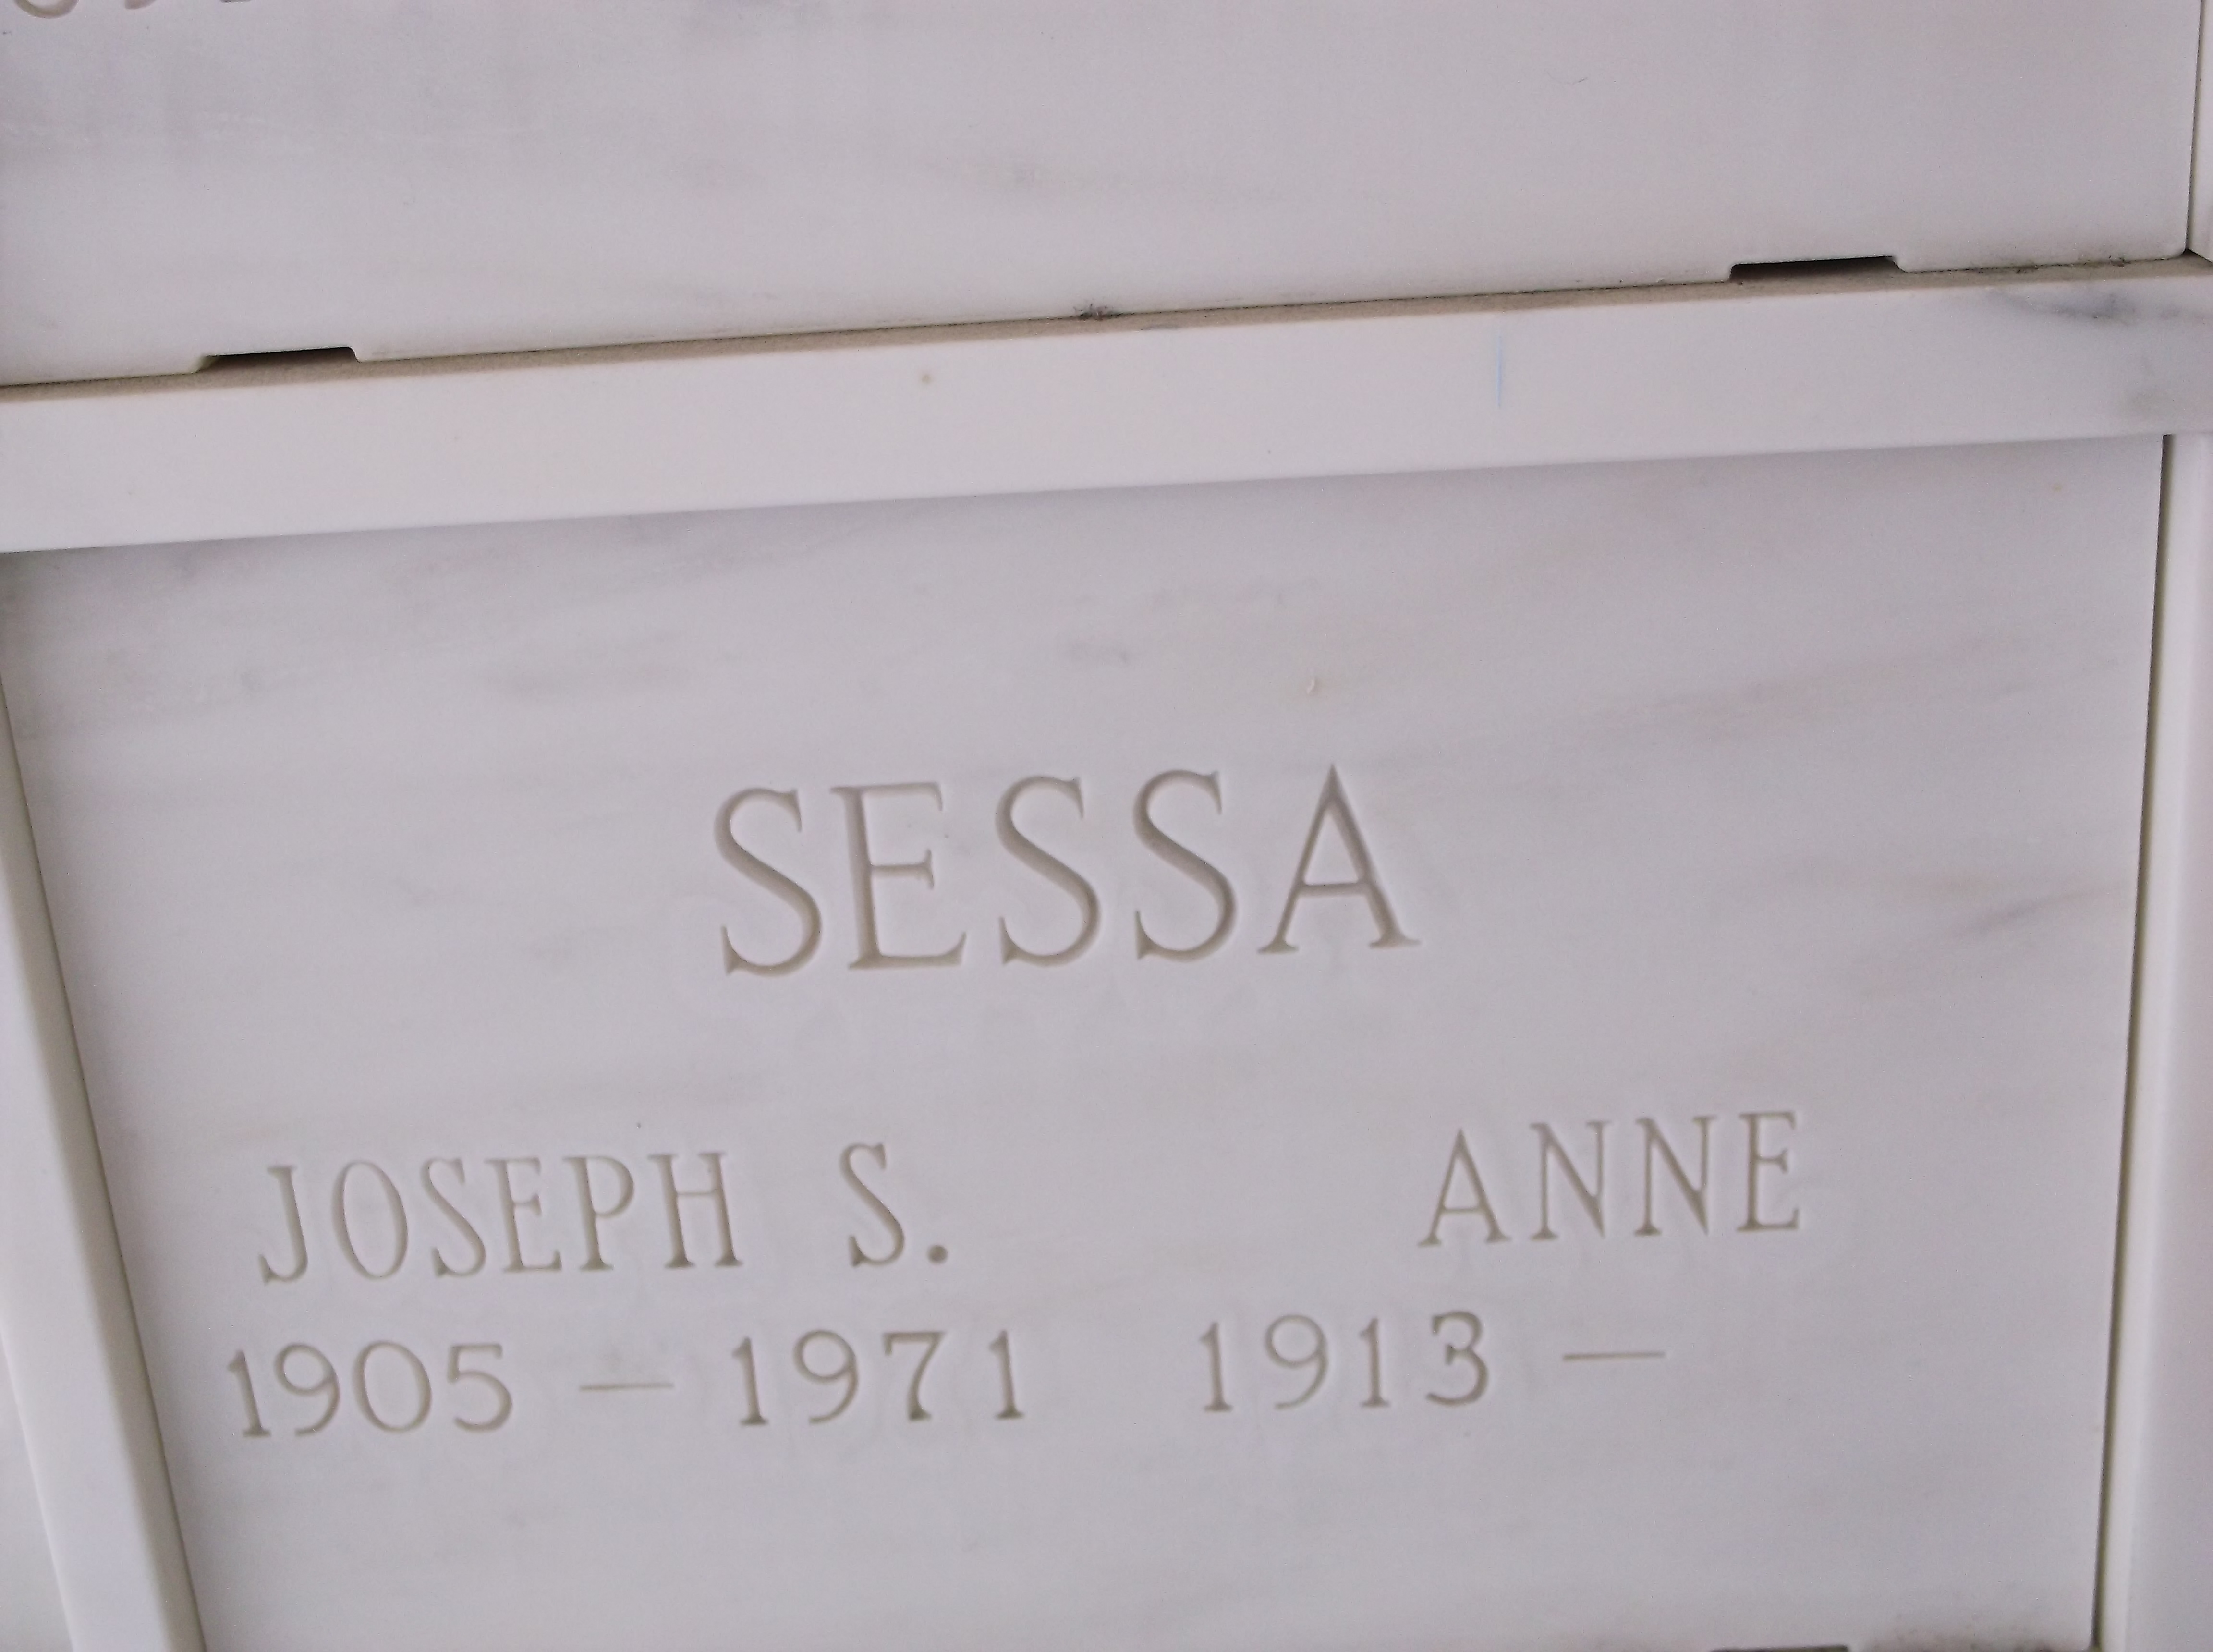 Joseph S Sessa